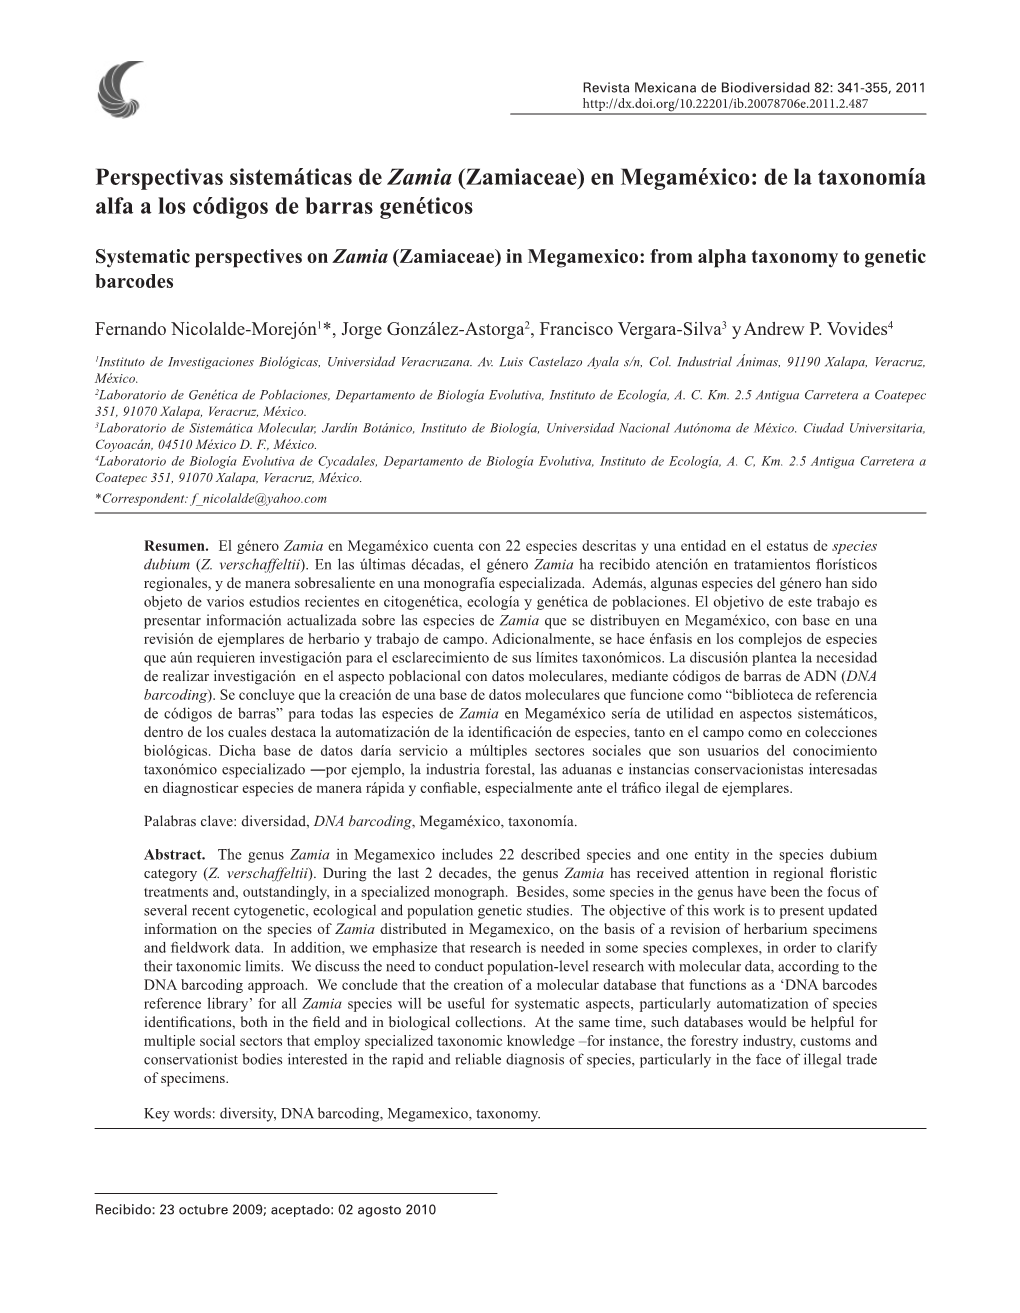 Zamiaceae) En Megaméxico: De La Taxonomía Alfa a Los Códigos De Barras Genéticos